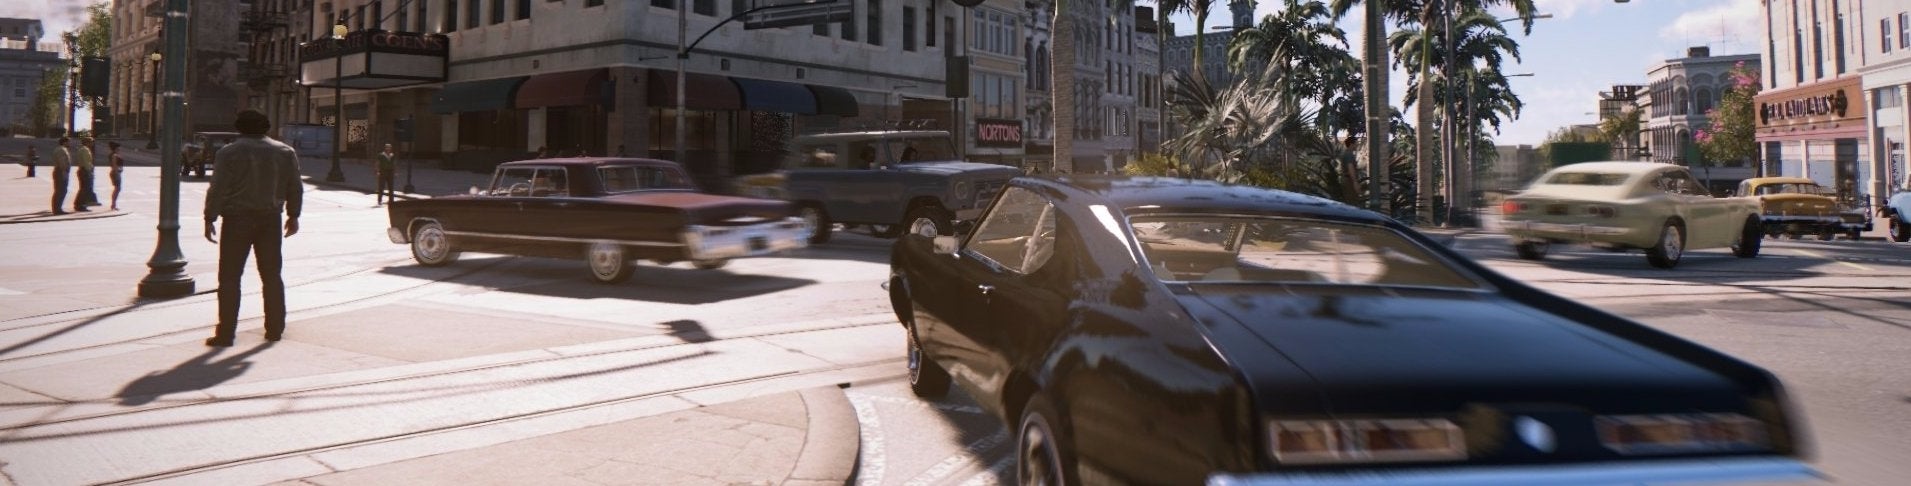 Afbeeldingen van Mafia 3 - Release date, trailers, gameplay